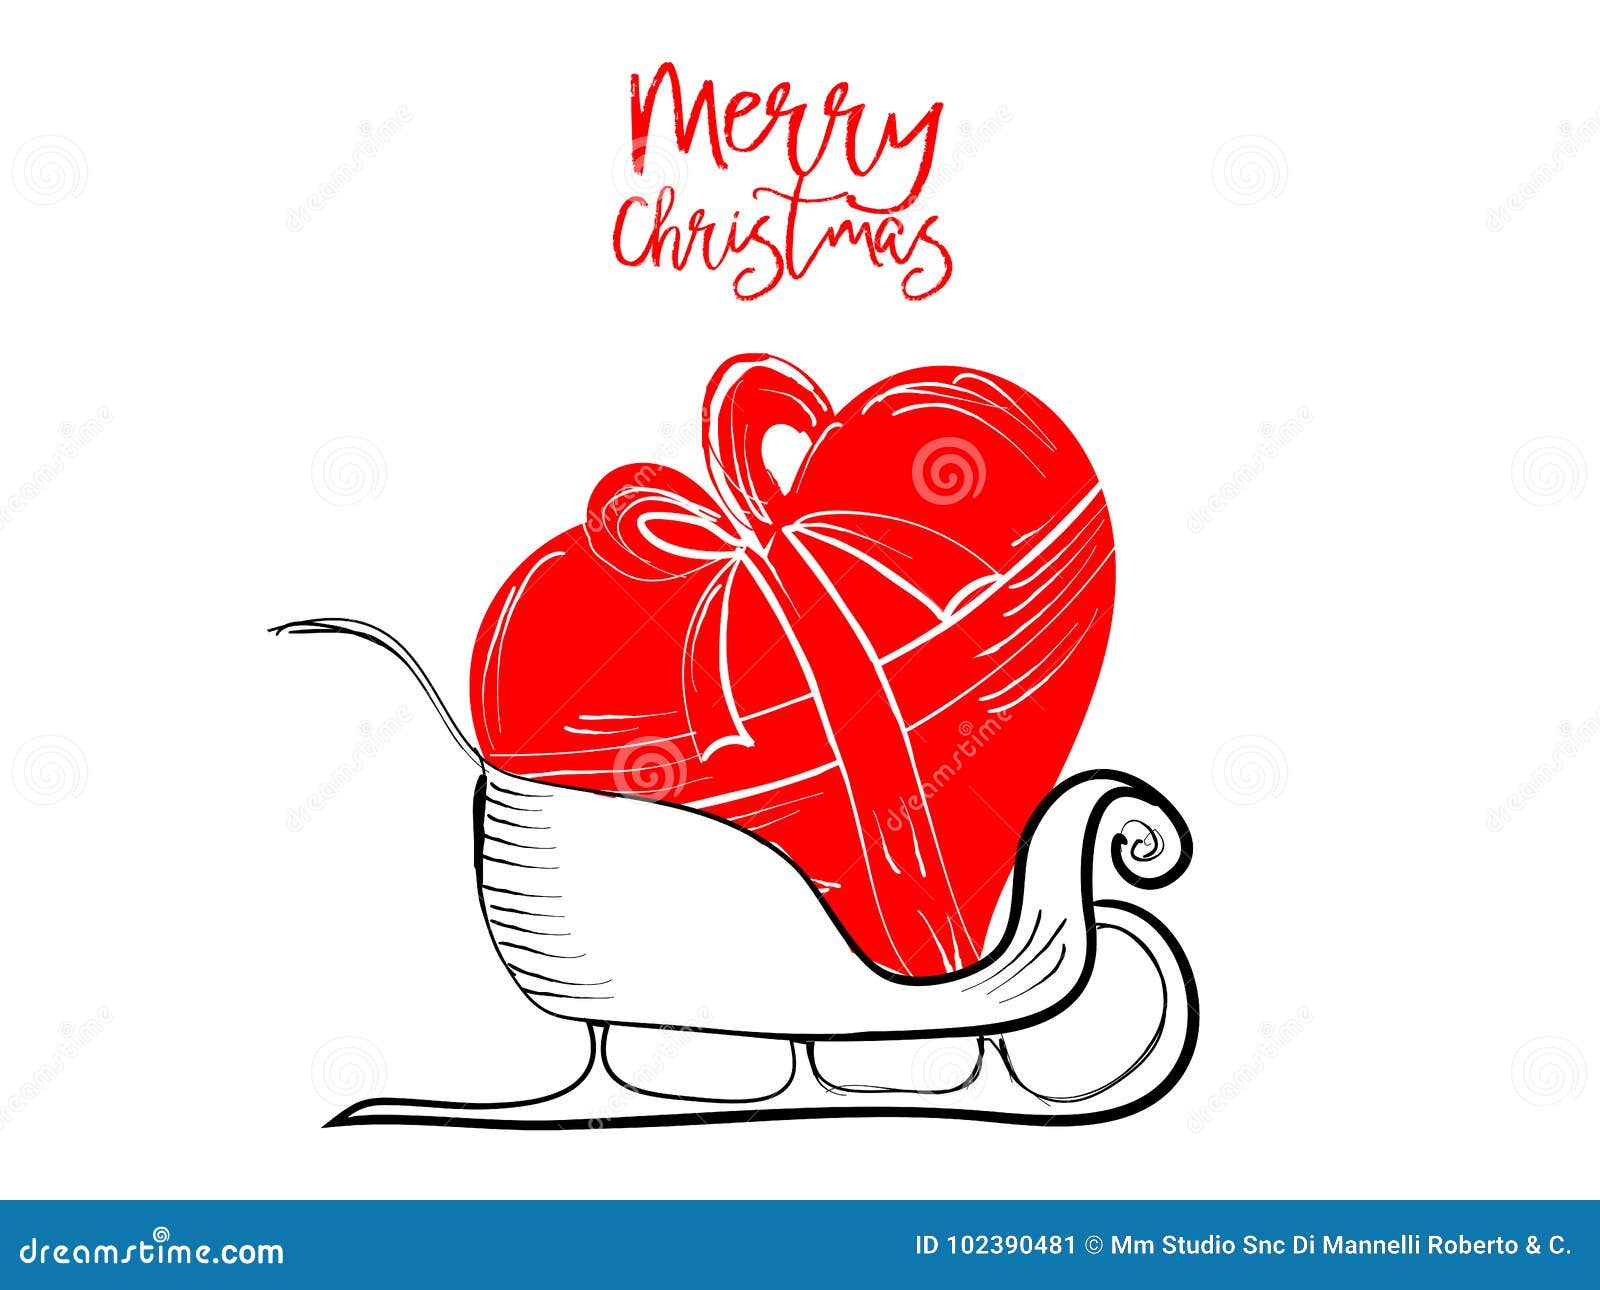 Cartoline D Auguri Di Buon Natale Disegnate A Mano Con Le Penne Nere E Rosse Per Le Feste Amorose Illustrazione Vettoriale Illustrazione Di Feste Mano